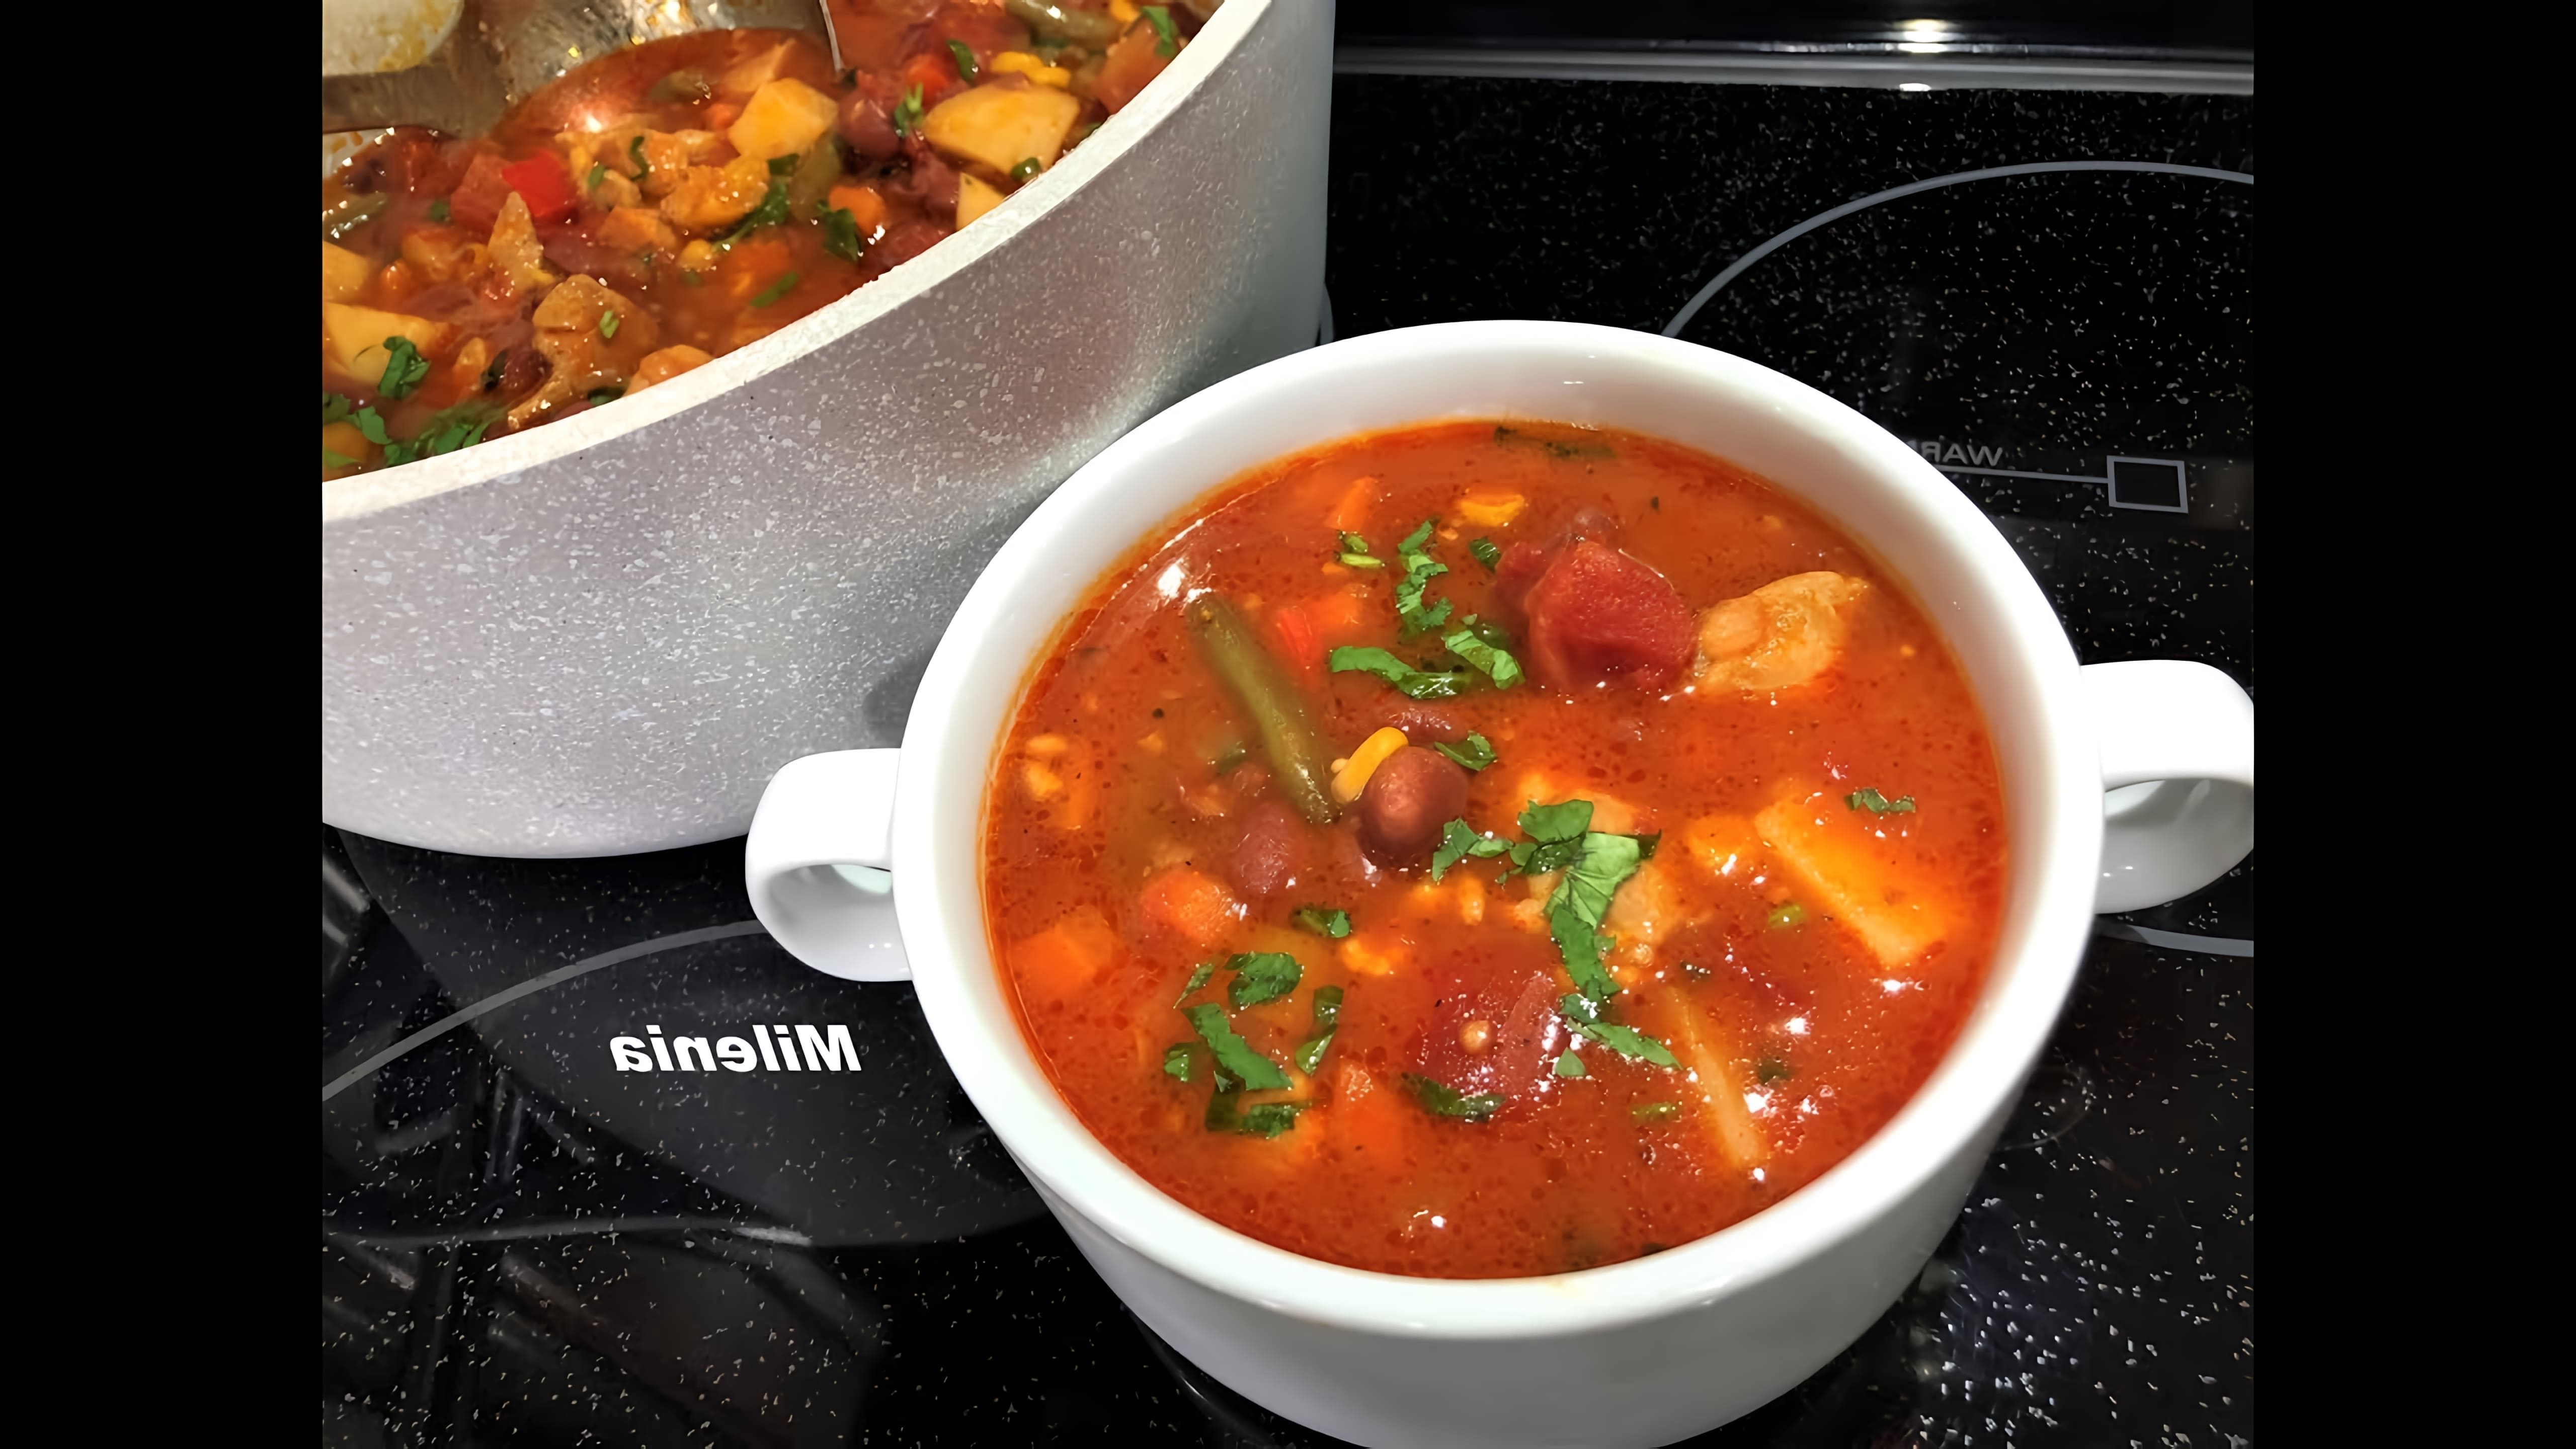 Видео - рецепт мексиканского супа, который описывается как очень вкусный, густой и насыщенный